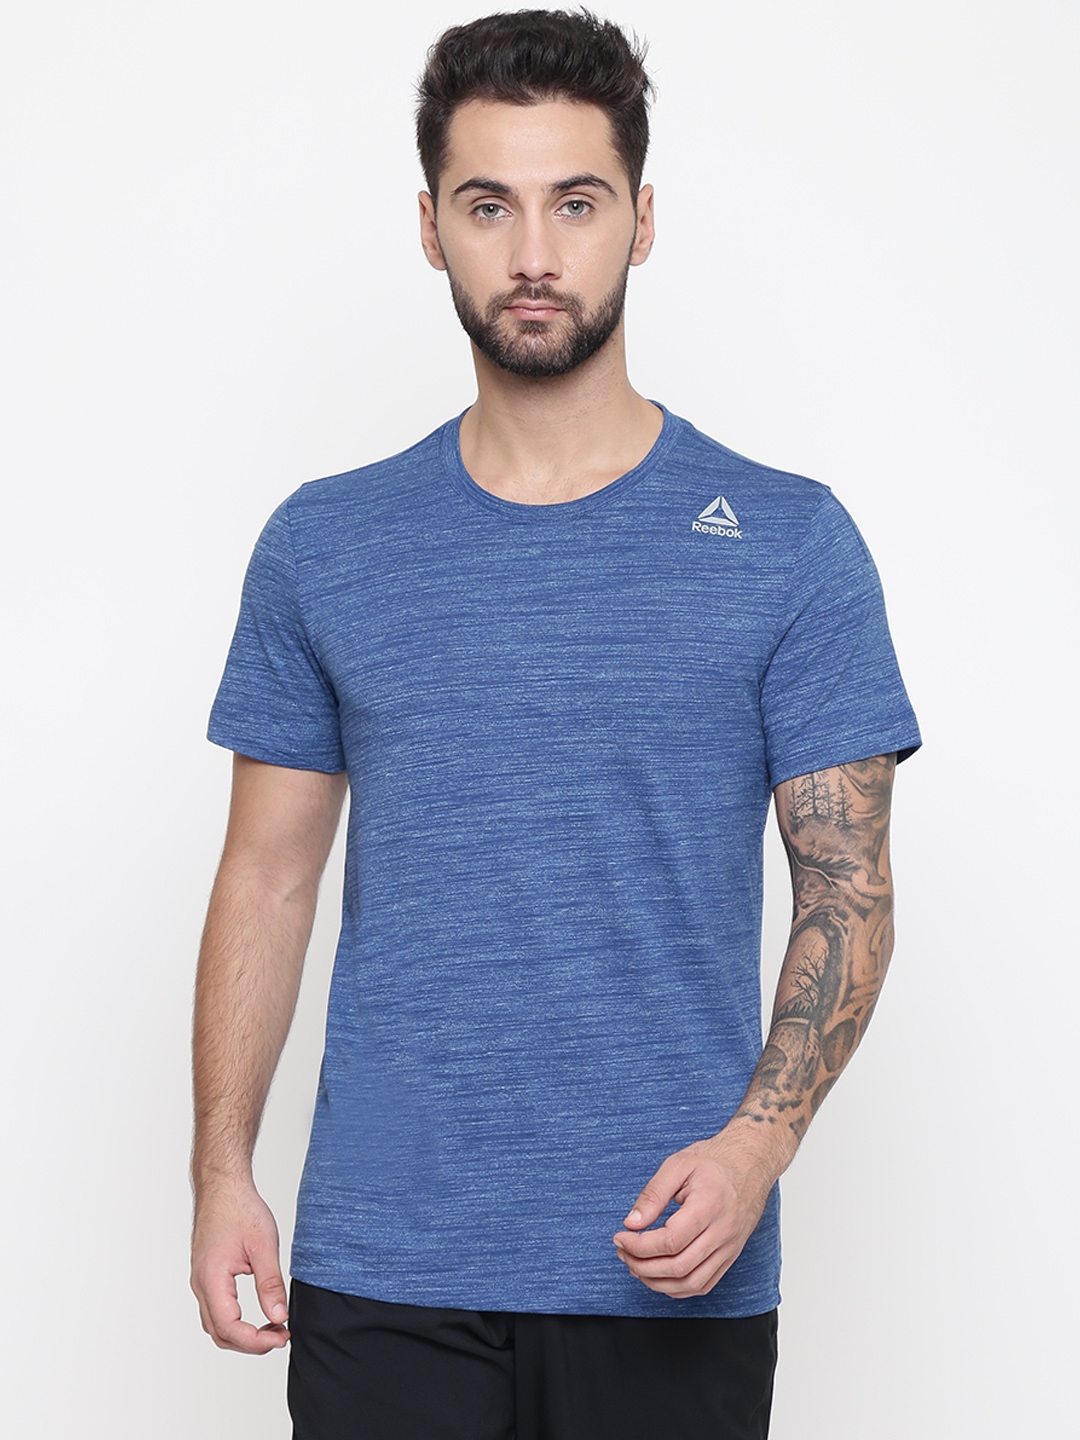 hævn effekt drivhus Buy Blue Solid Round Neck T Shirt - Tshirts for Men 7244569 | Myntra